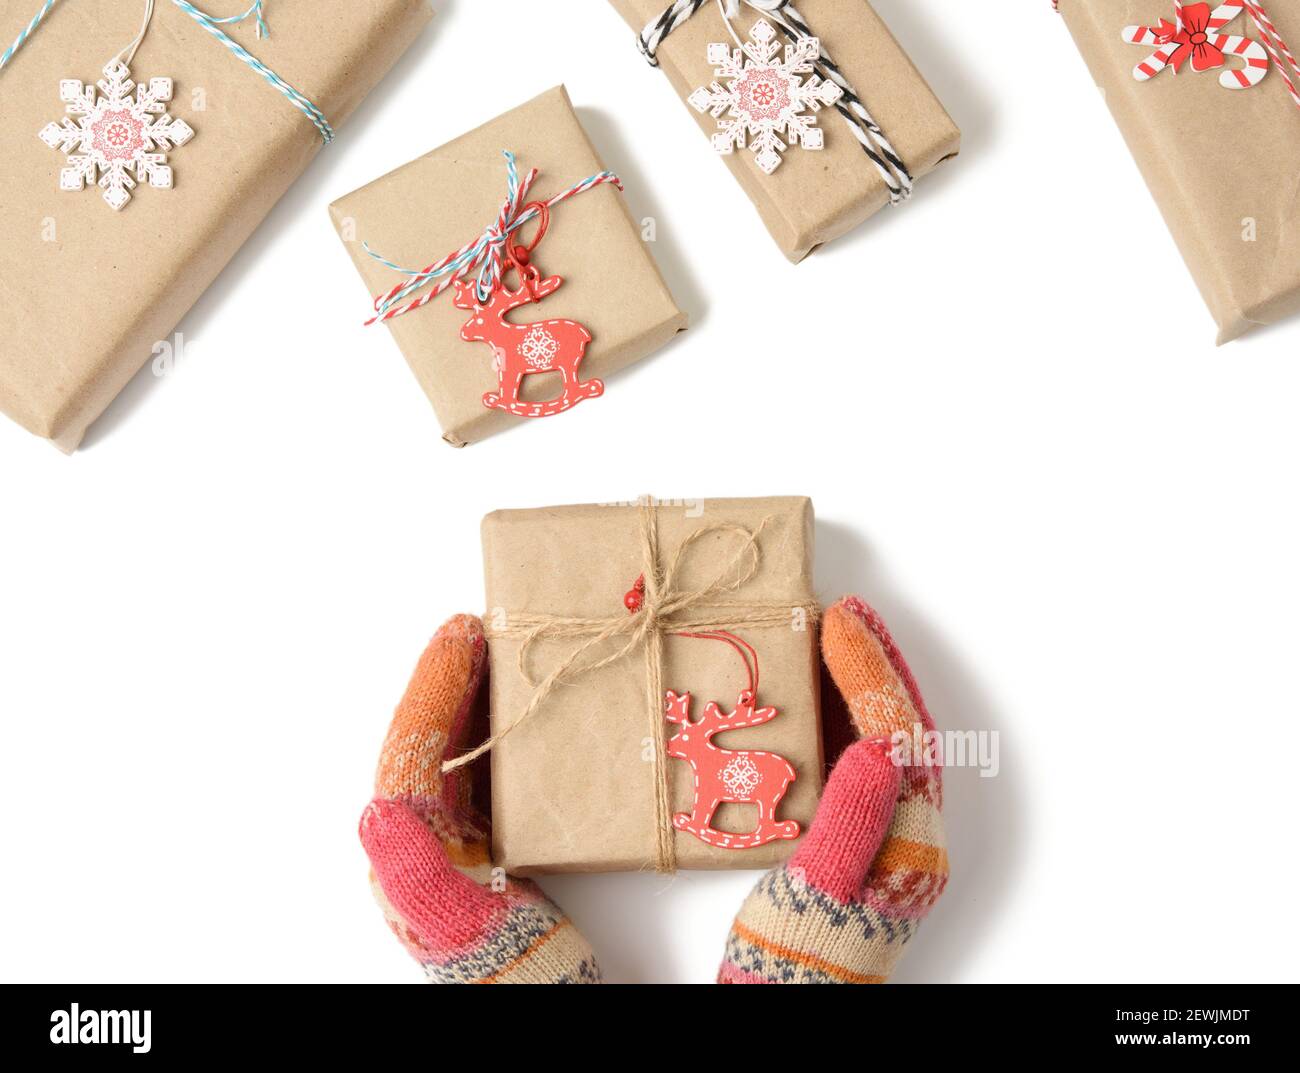 las manos femeninas en manoplas tejidas sostienen una caja envuelta en papel marrón y atada con una cuerda sobre un fondo blanco, superior stock - Alamy